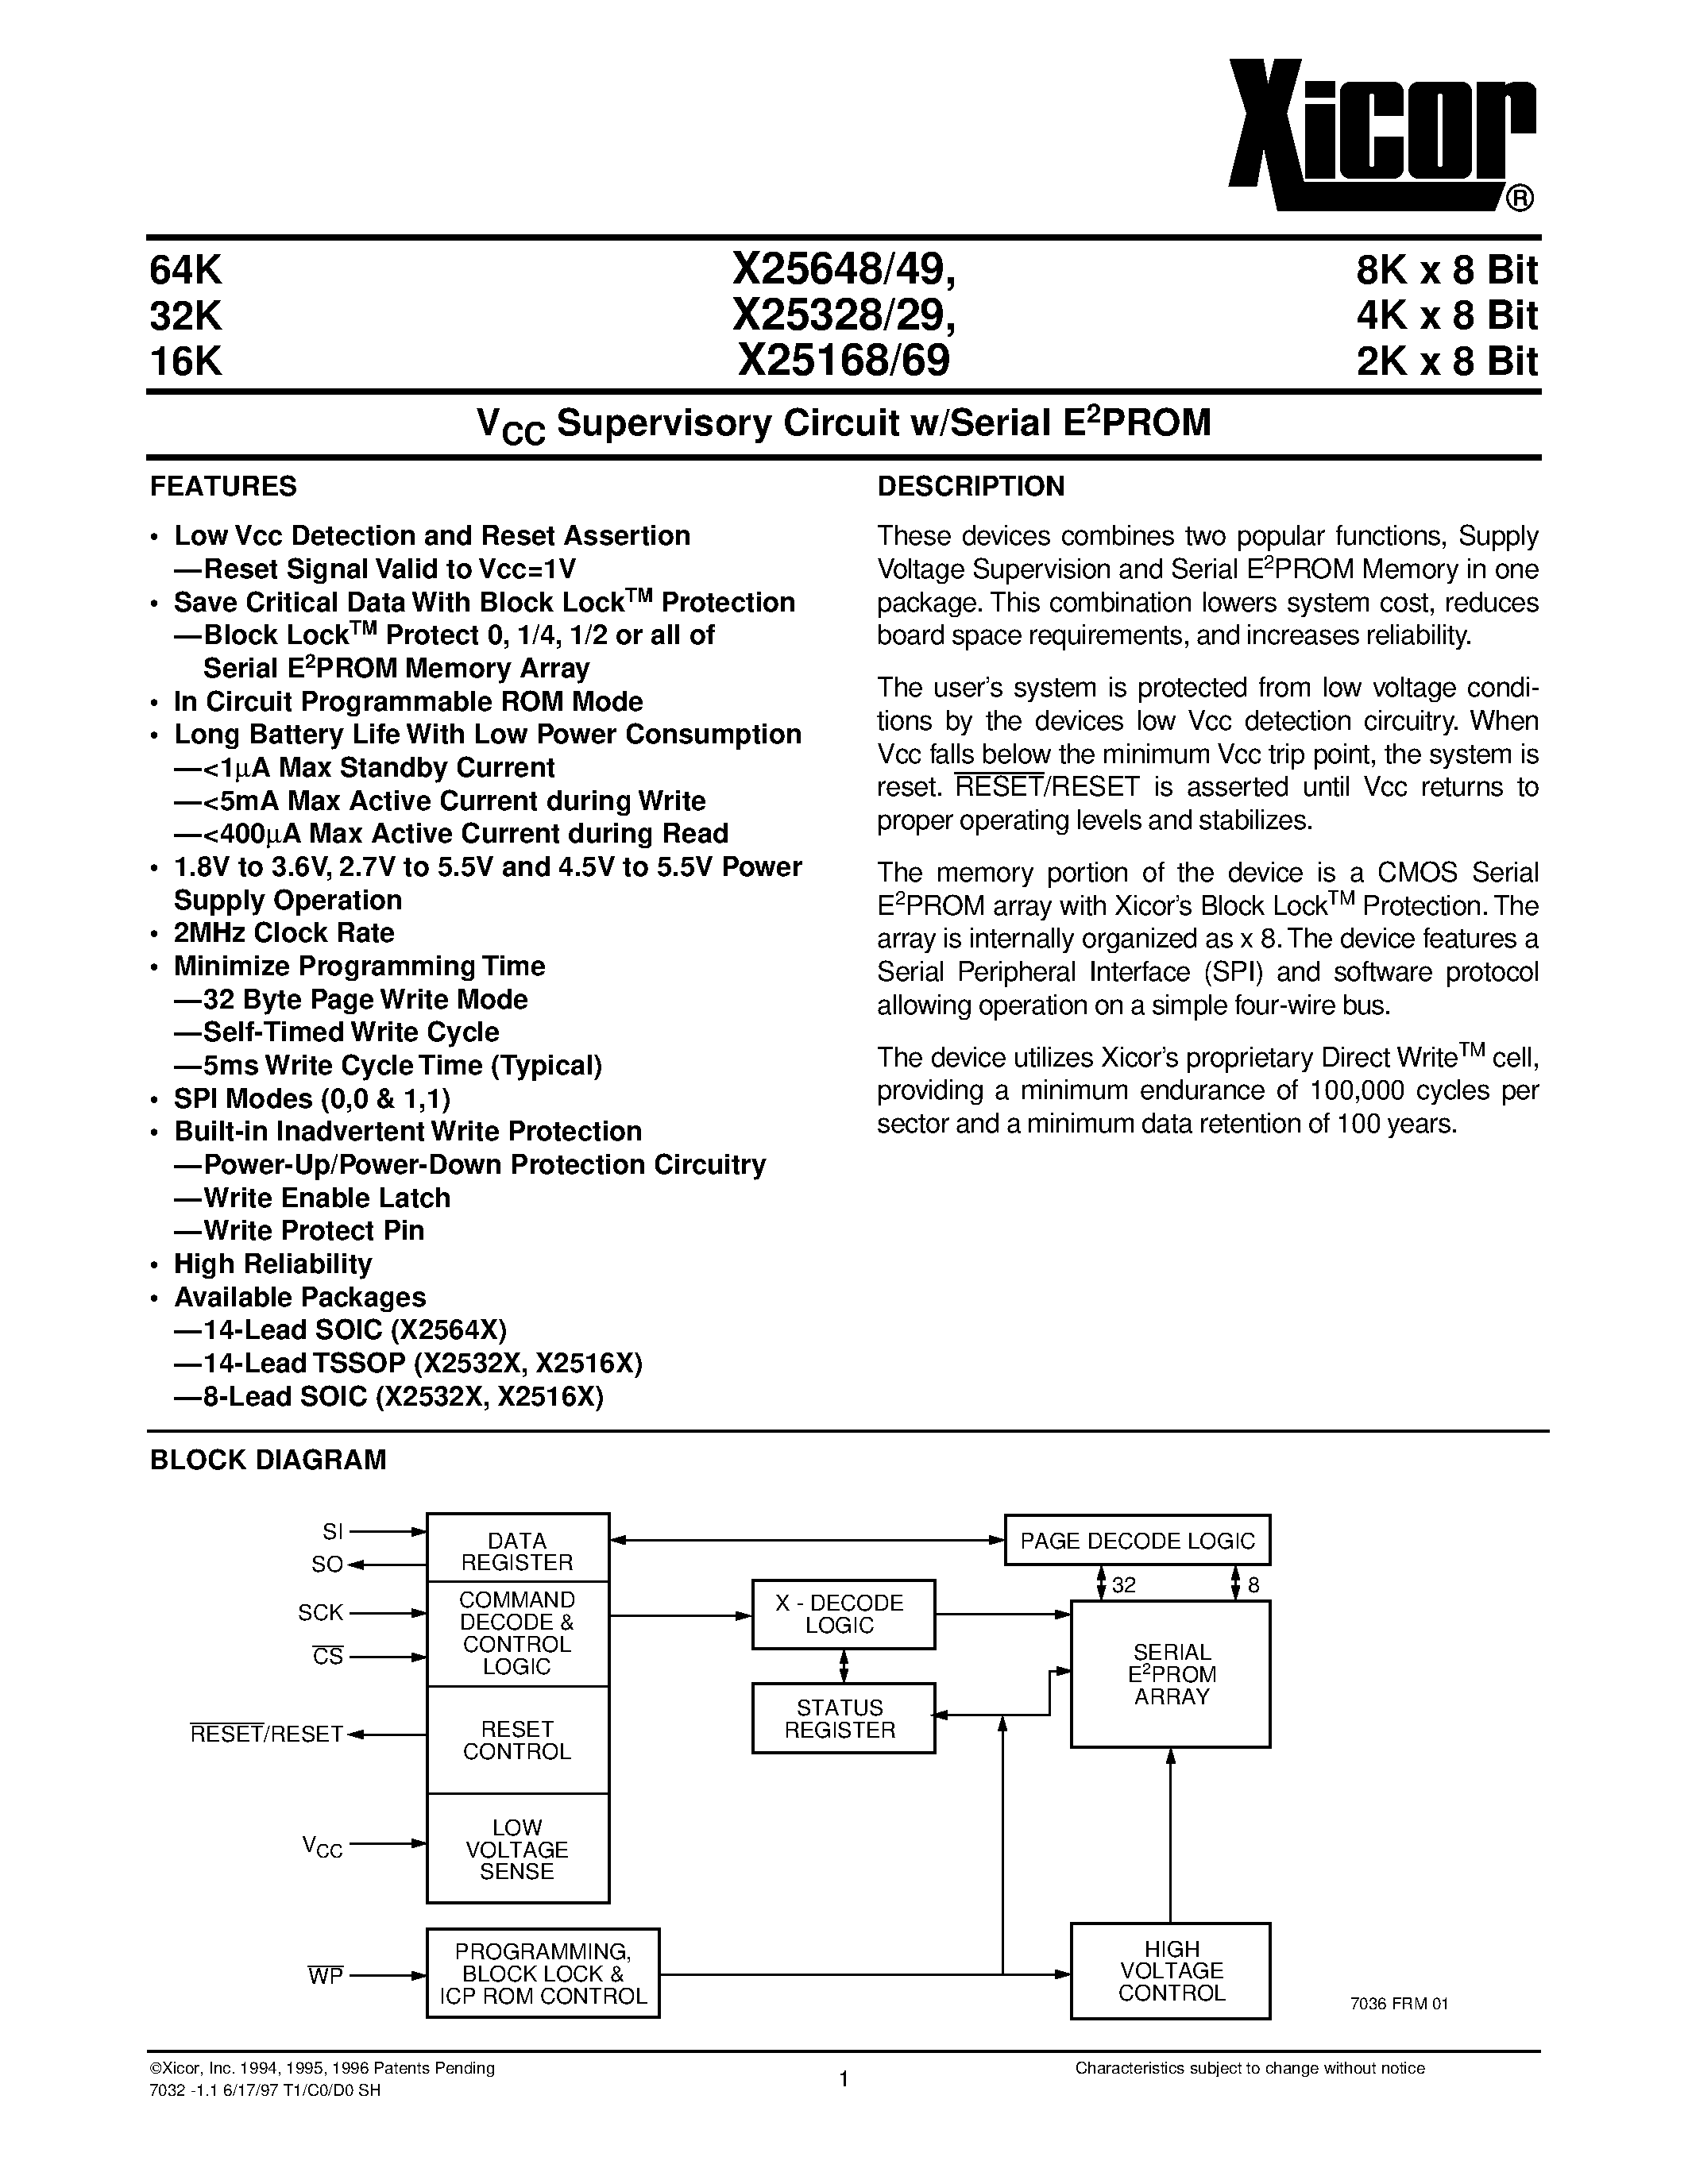 Даташит X25649S8-2.7 - V CC Supervisory Circuit w/Serial E 2 PROM страница 1